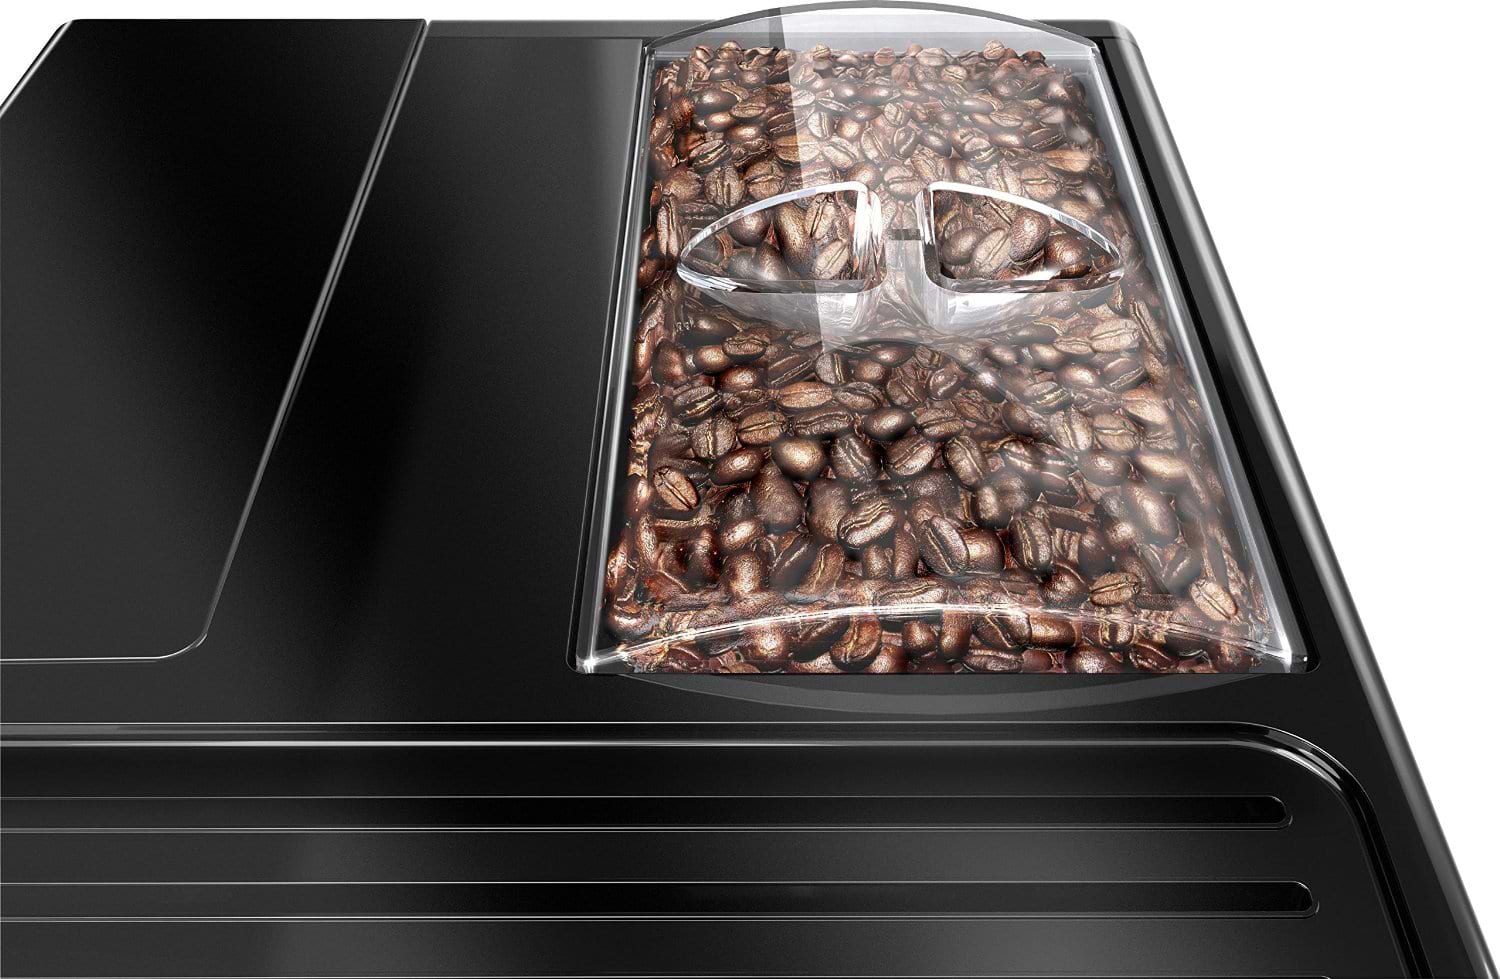 מכונת קפה מליטה סולו צבע פיור בלאק Melitta Solo Pure Black אחריות יבואן רשמי